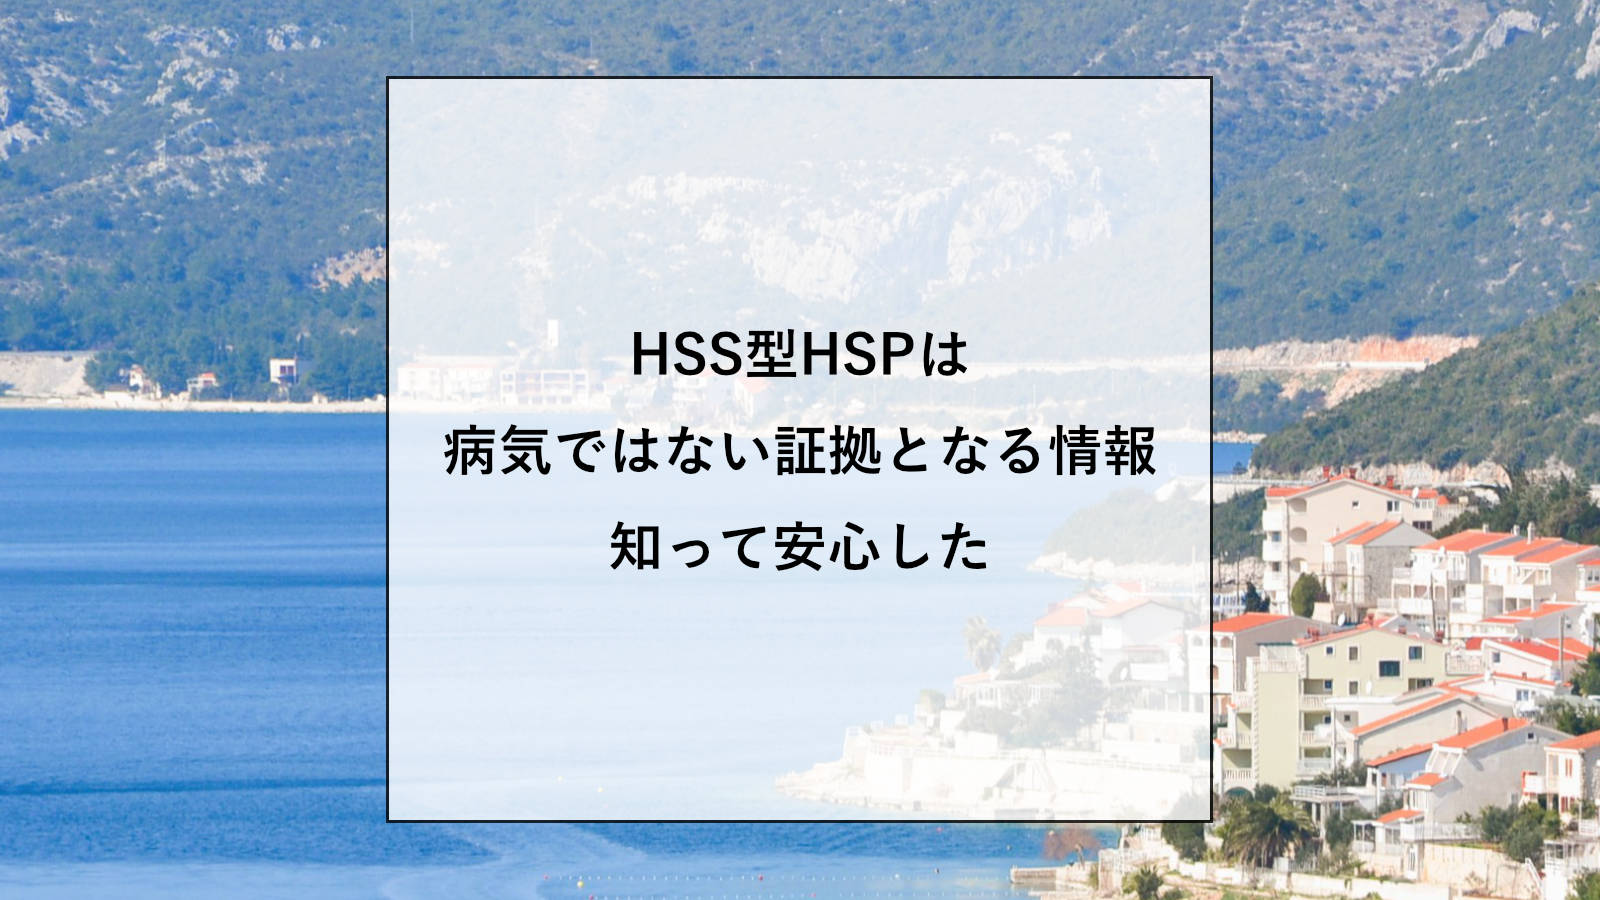 HSS型HSPは病気ではない証拠となる情報【専門書から部分的に引用してお伝え】